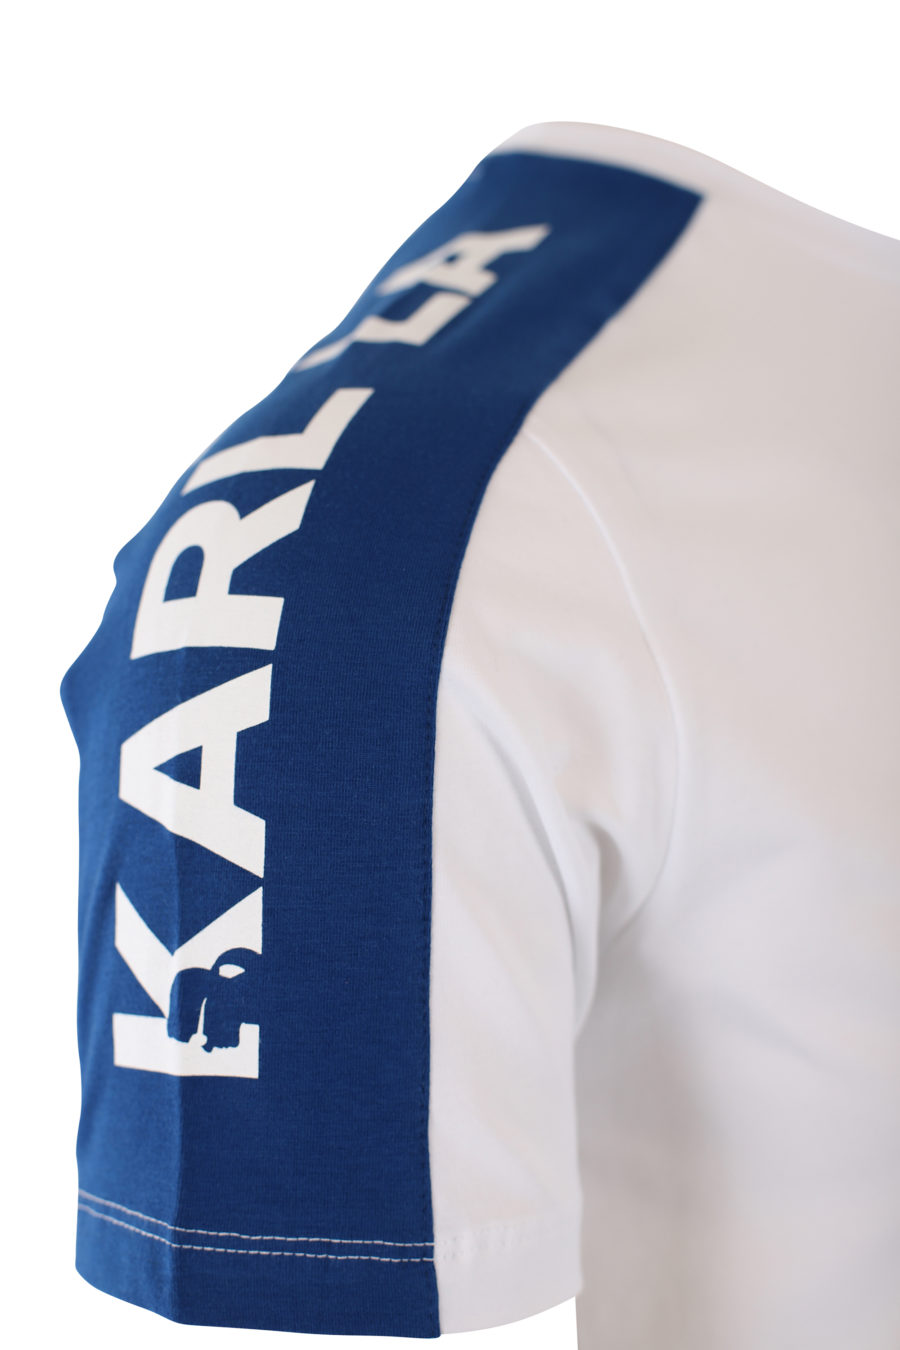 Camiseta blanca con logo en cinta azul en hombros - IMG 2115